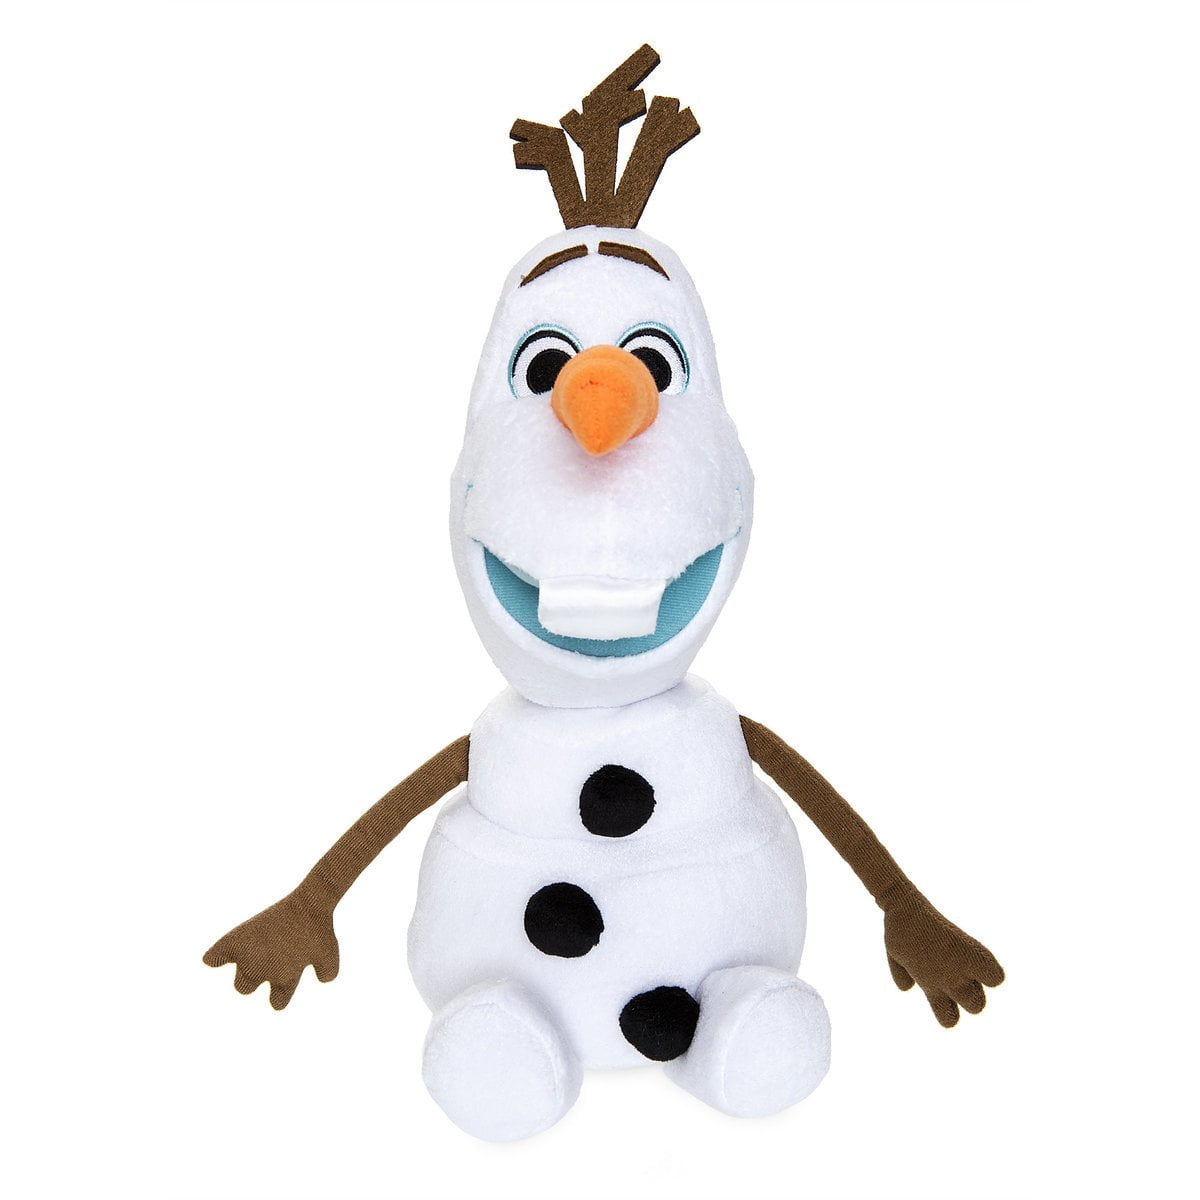 Frozen Olaf Super 48" 4' Tall Stuffed Snowman Display Walmart.com